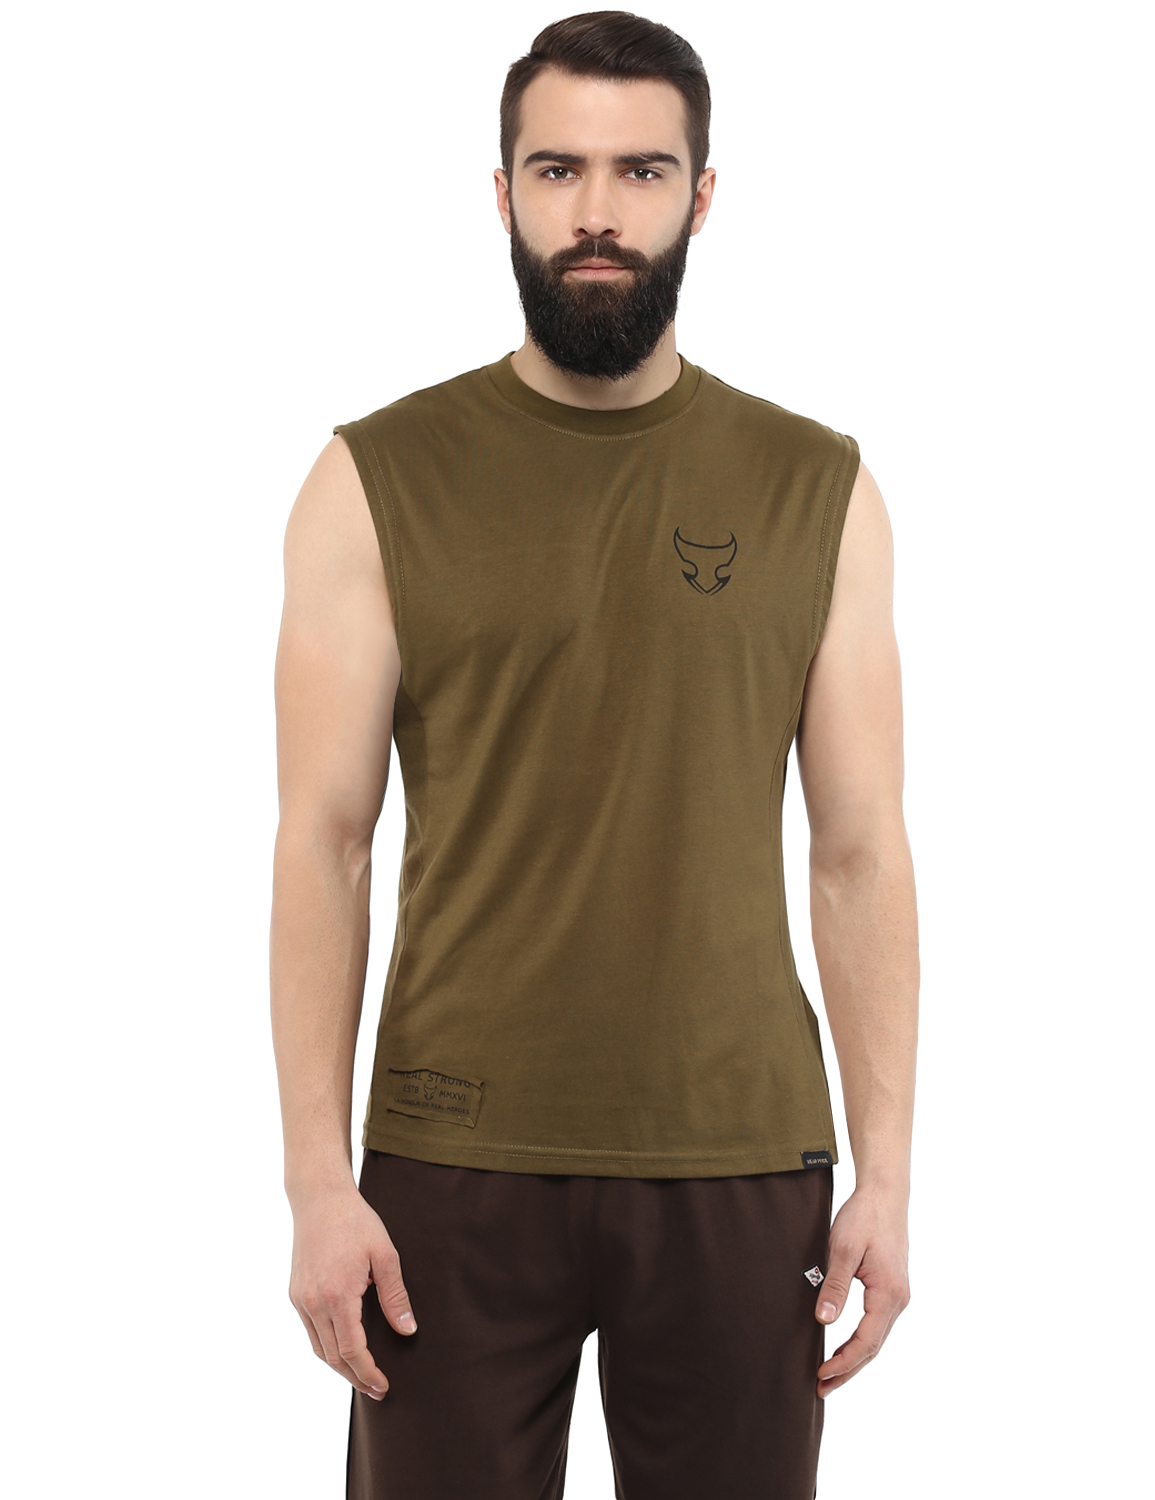 Combat - Assault Sleeveless T-Shirt - Real Strong